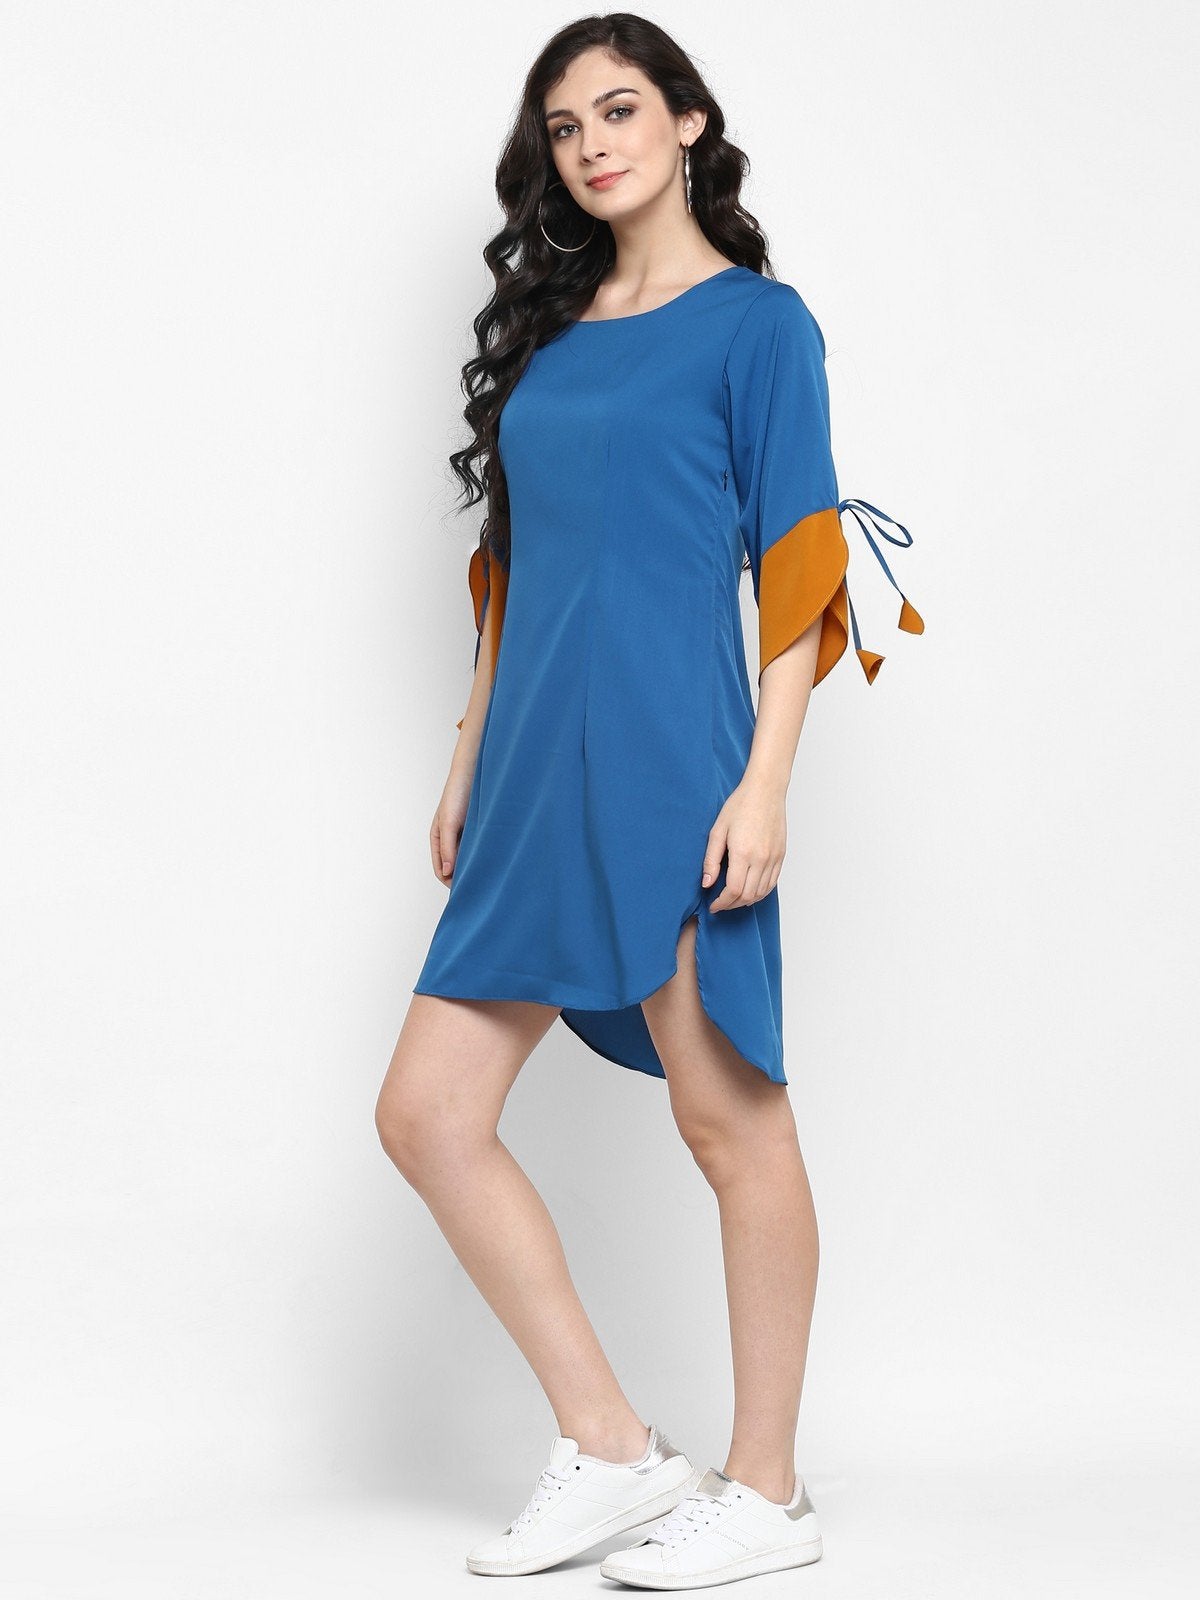 Women's Solid Color-Block Dress - Pannkh